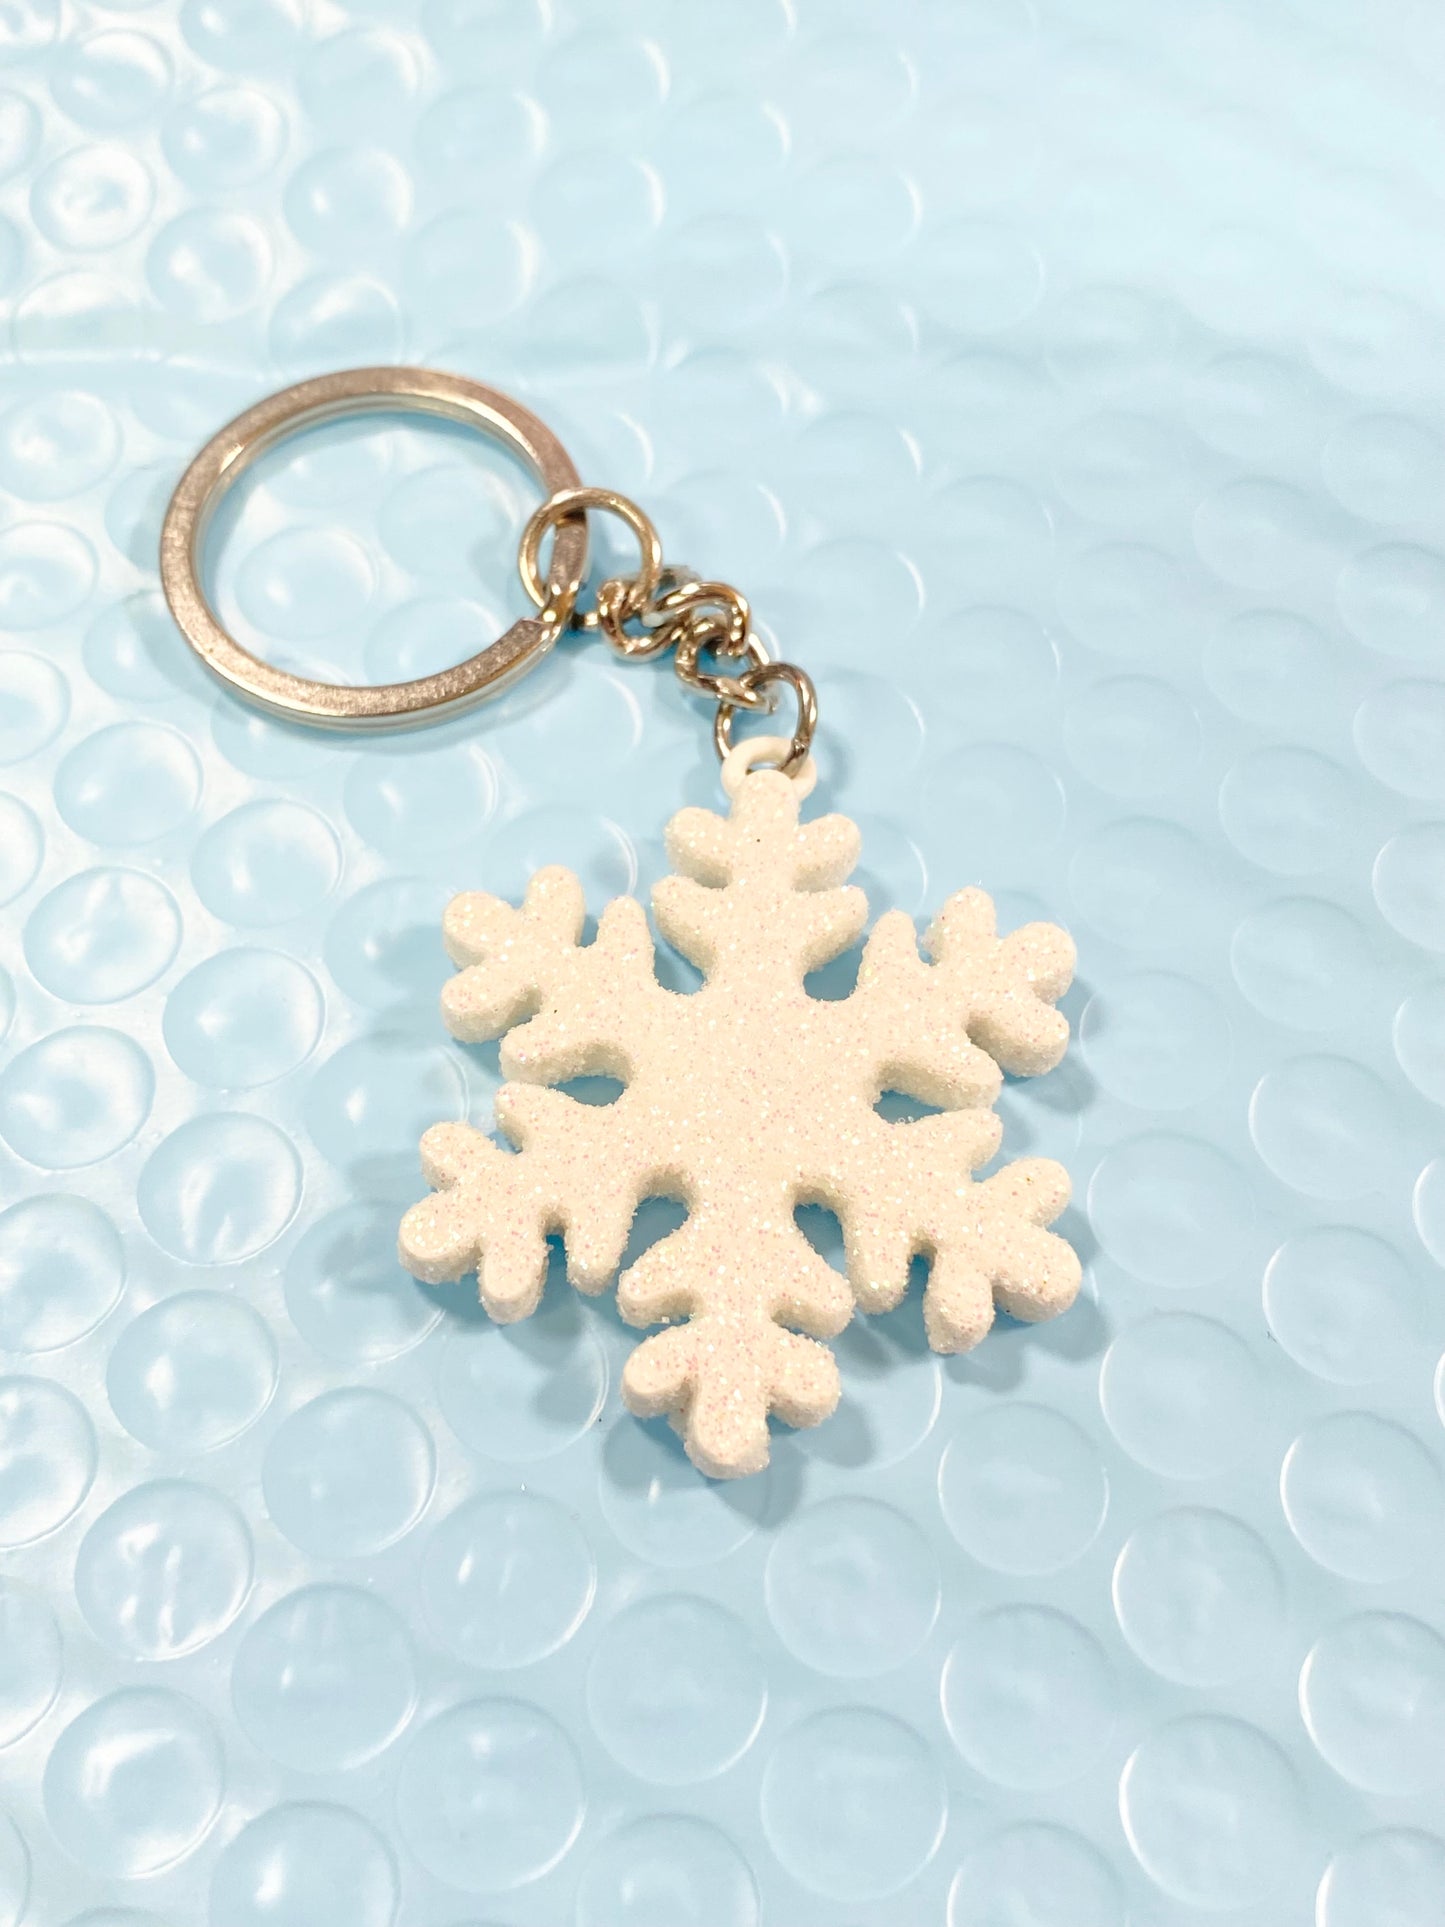 Snowflake Keychain